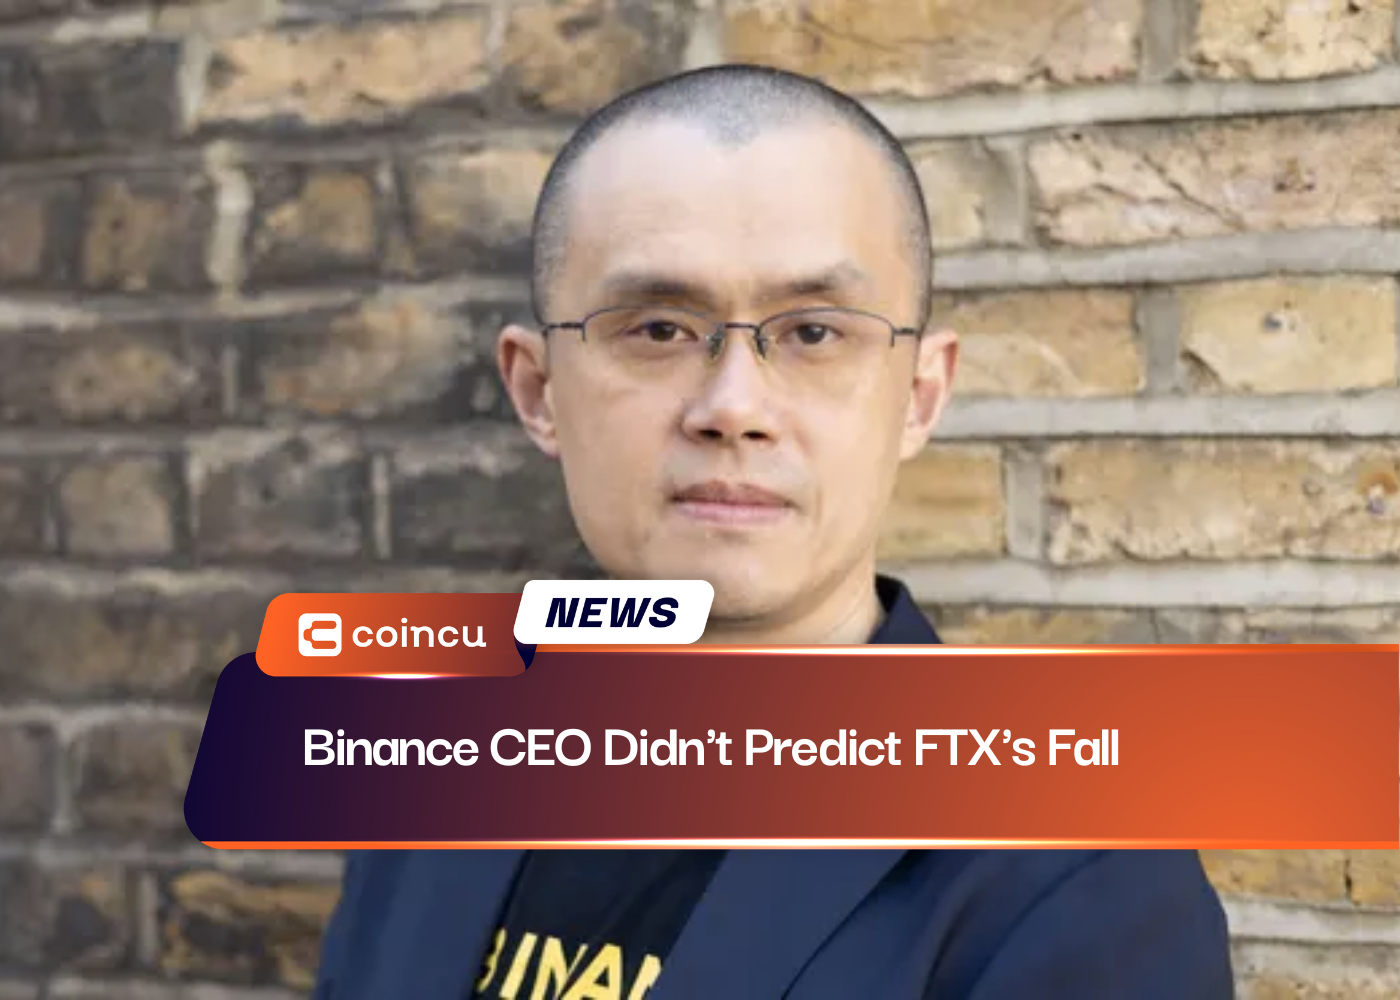 Binance CEO Didn't Predict FTX's Fall